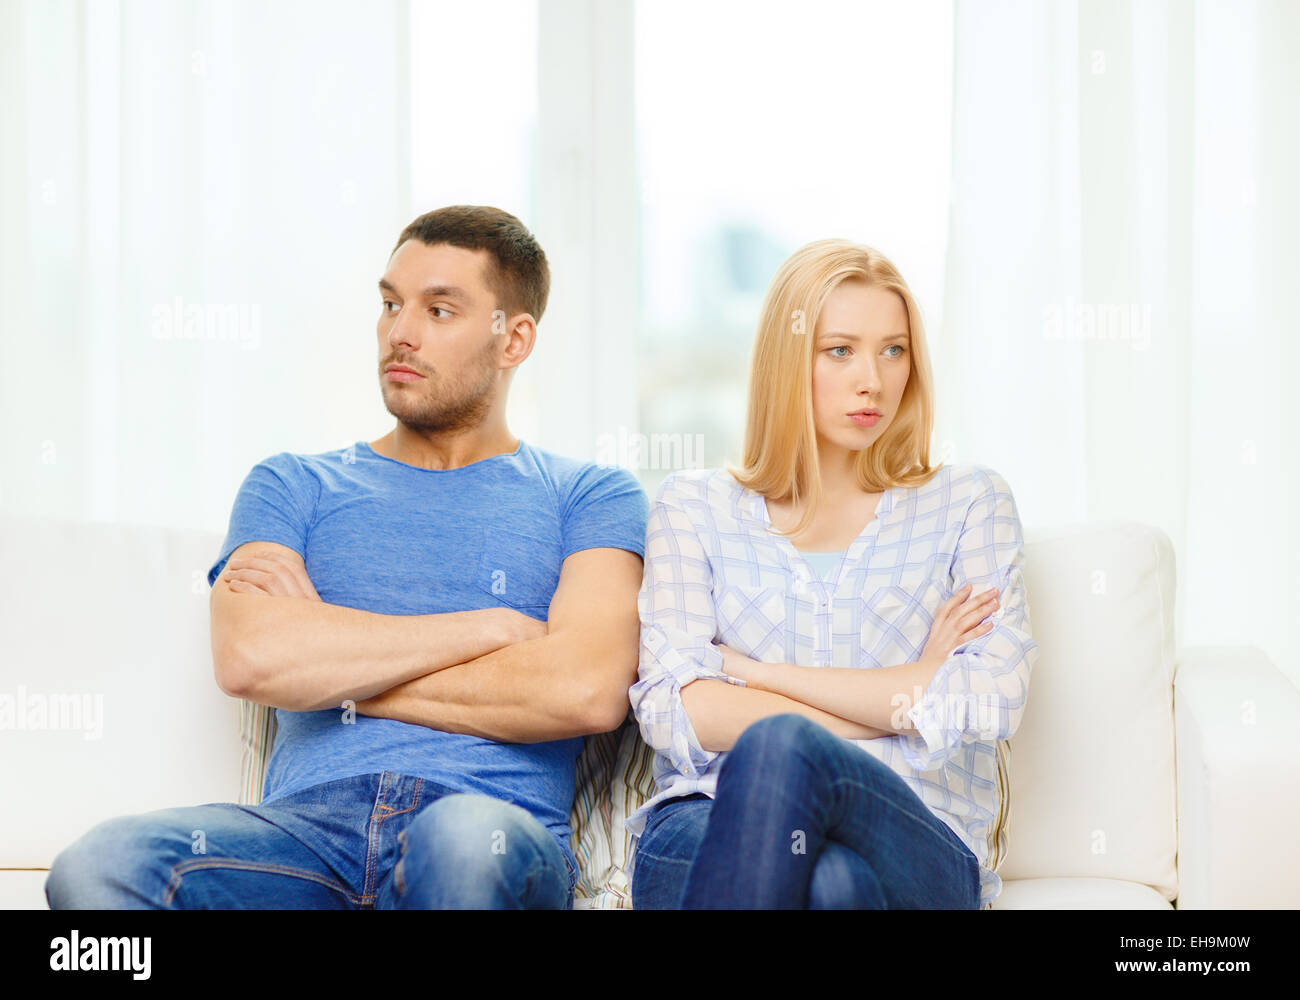 Malheureux couple having argument at home Banque D'Images